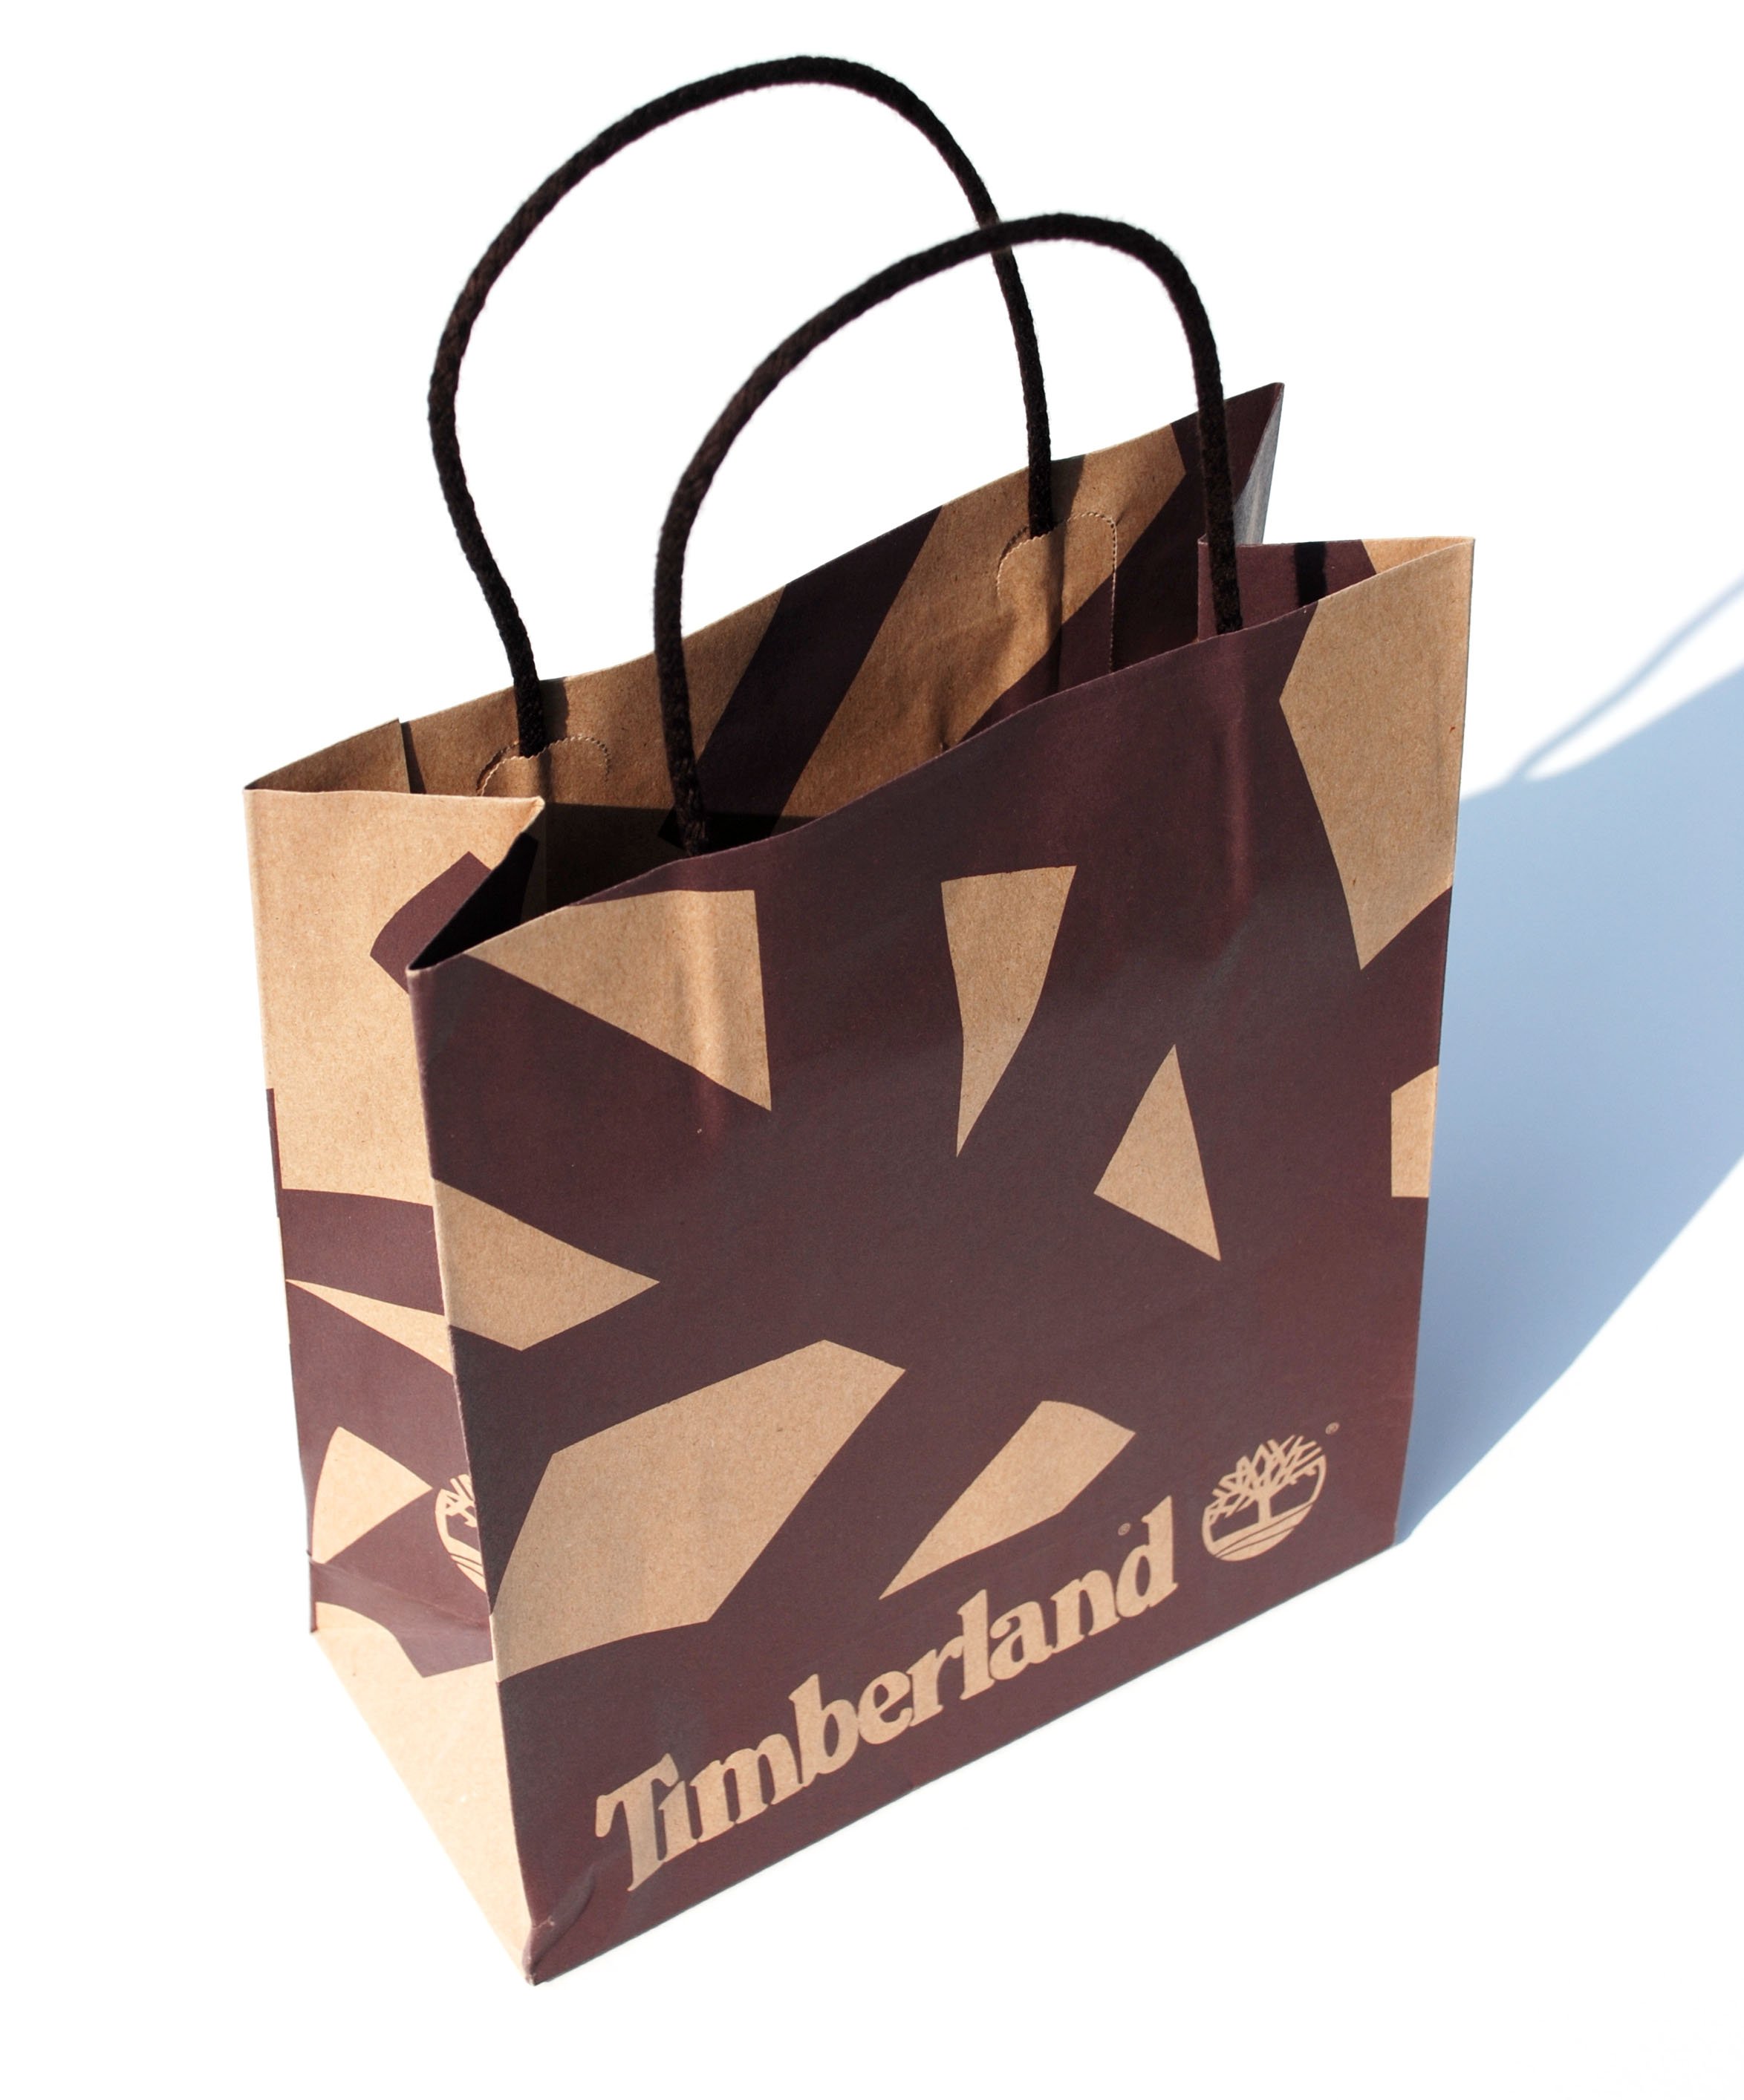 Timberland – Retail Bag Creative